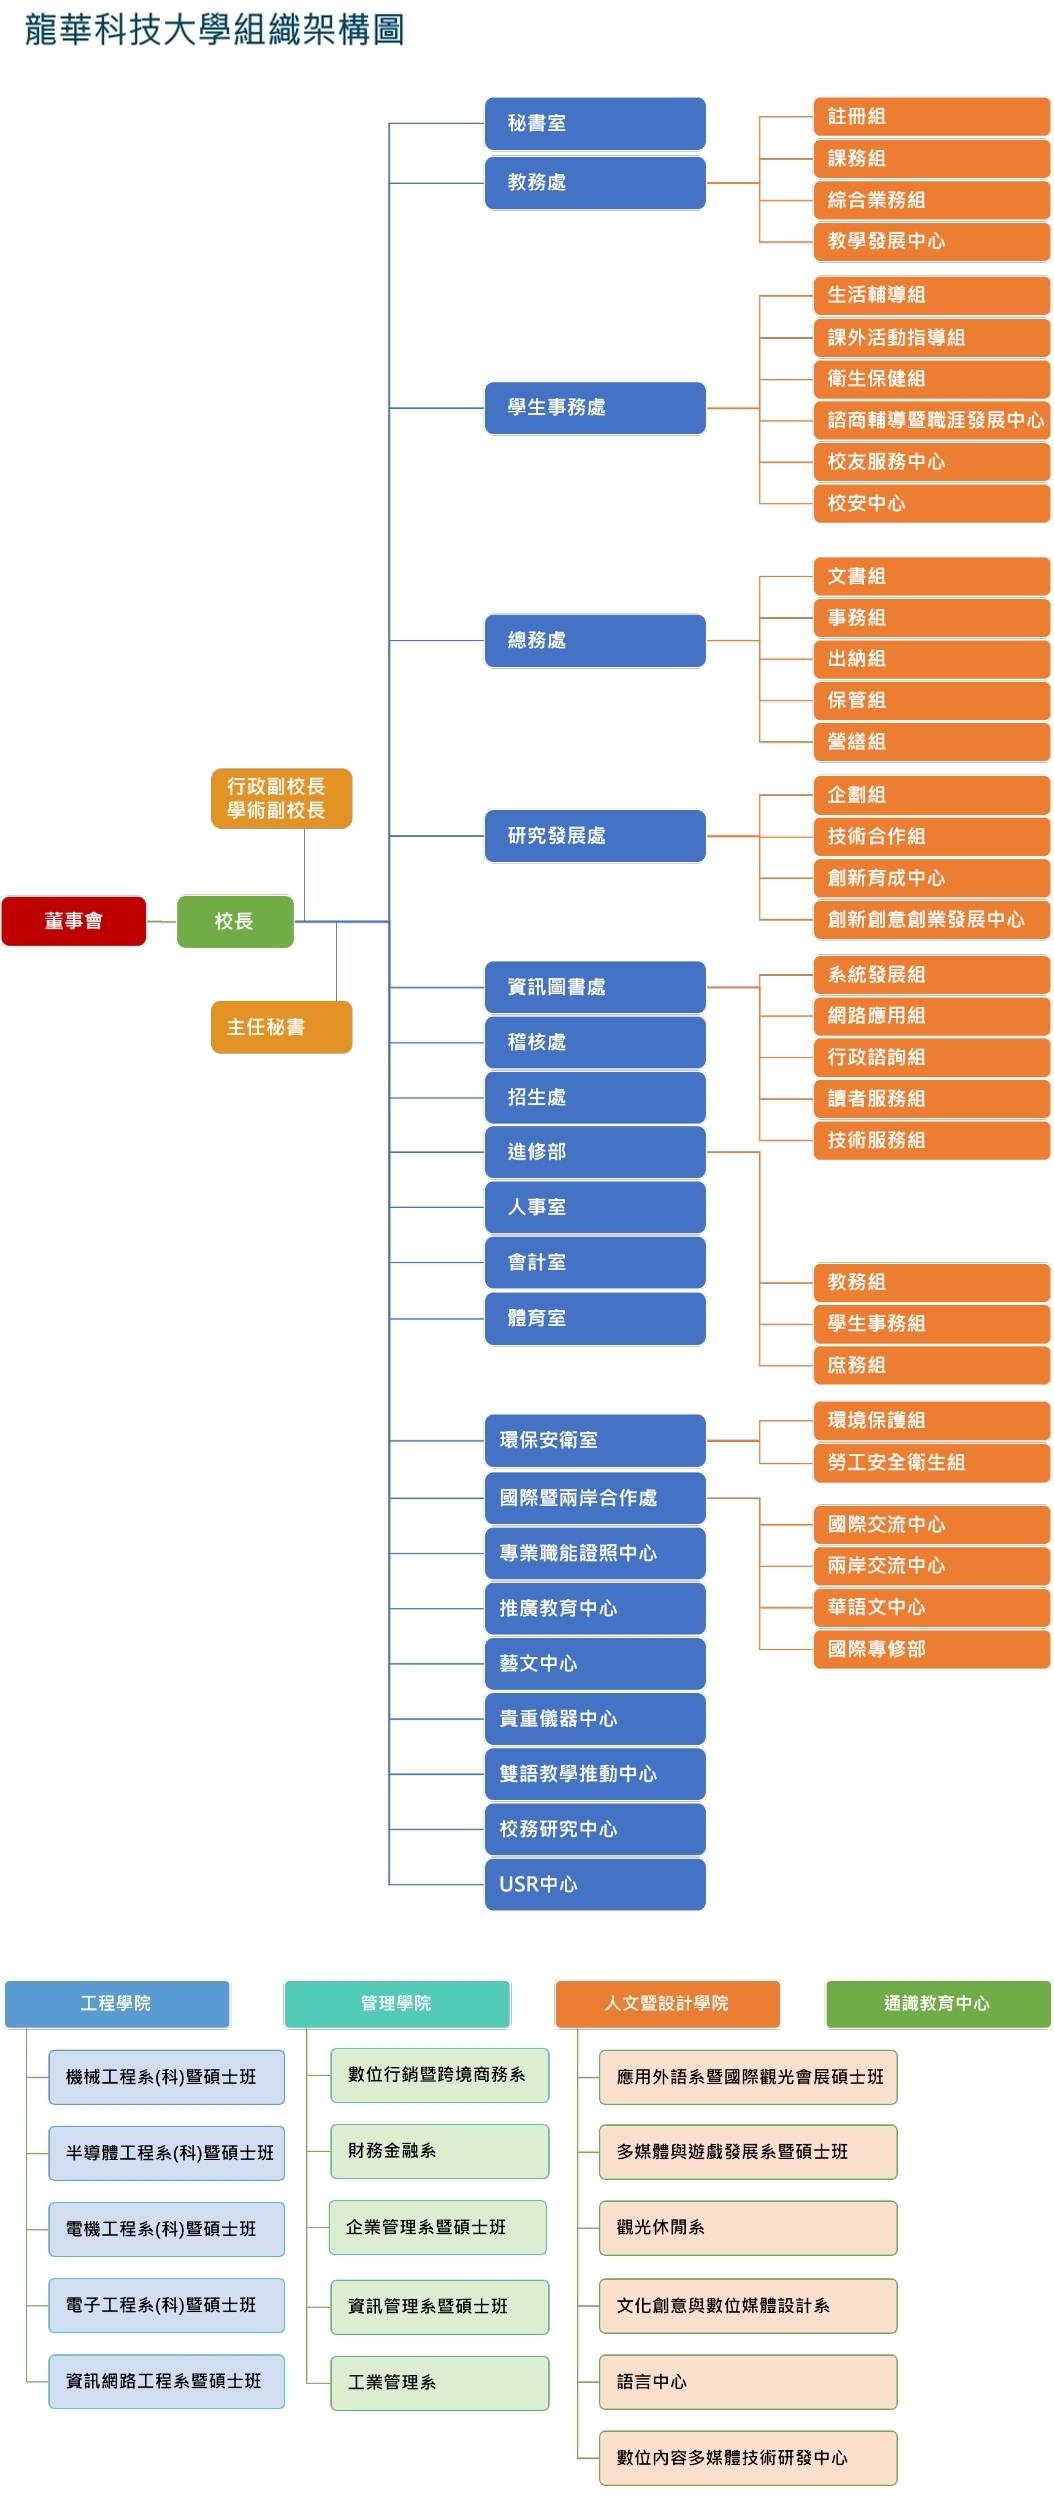 龍華科技大學組織架構圖